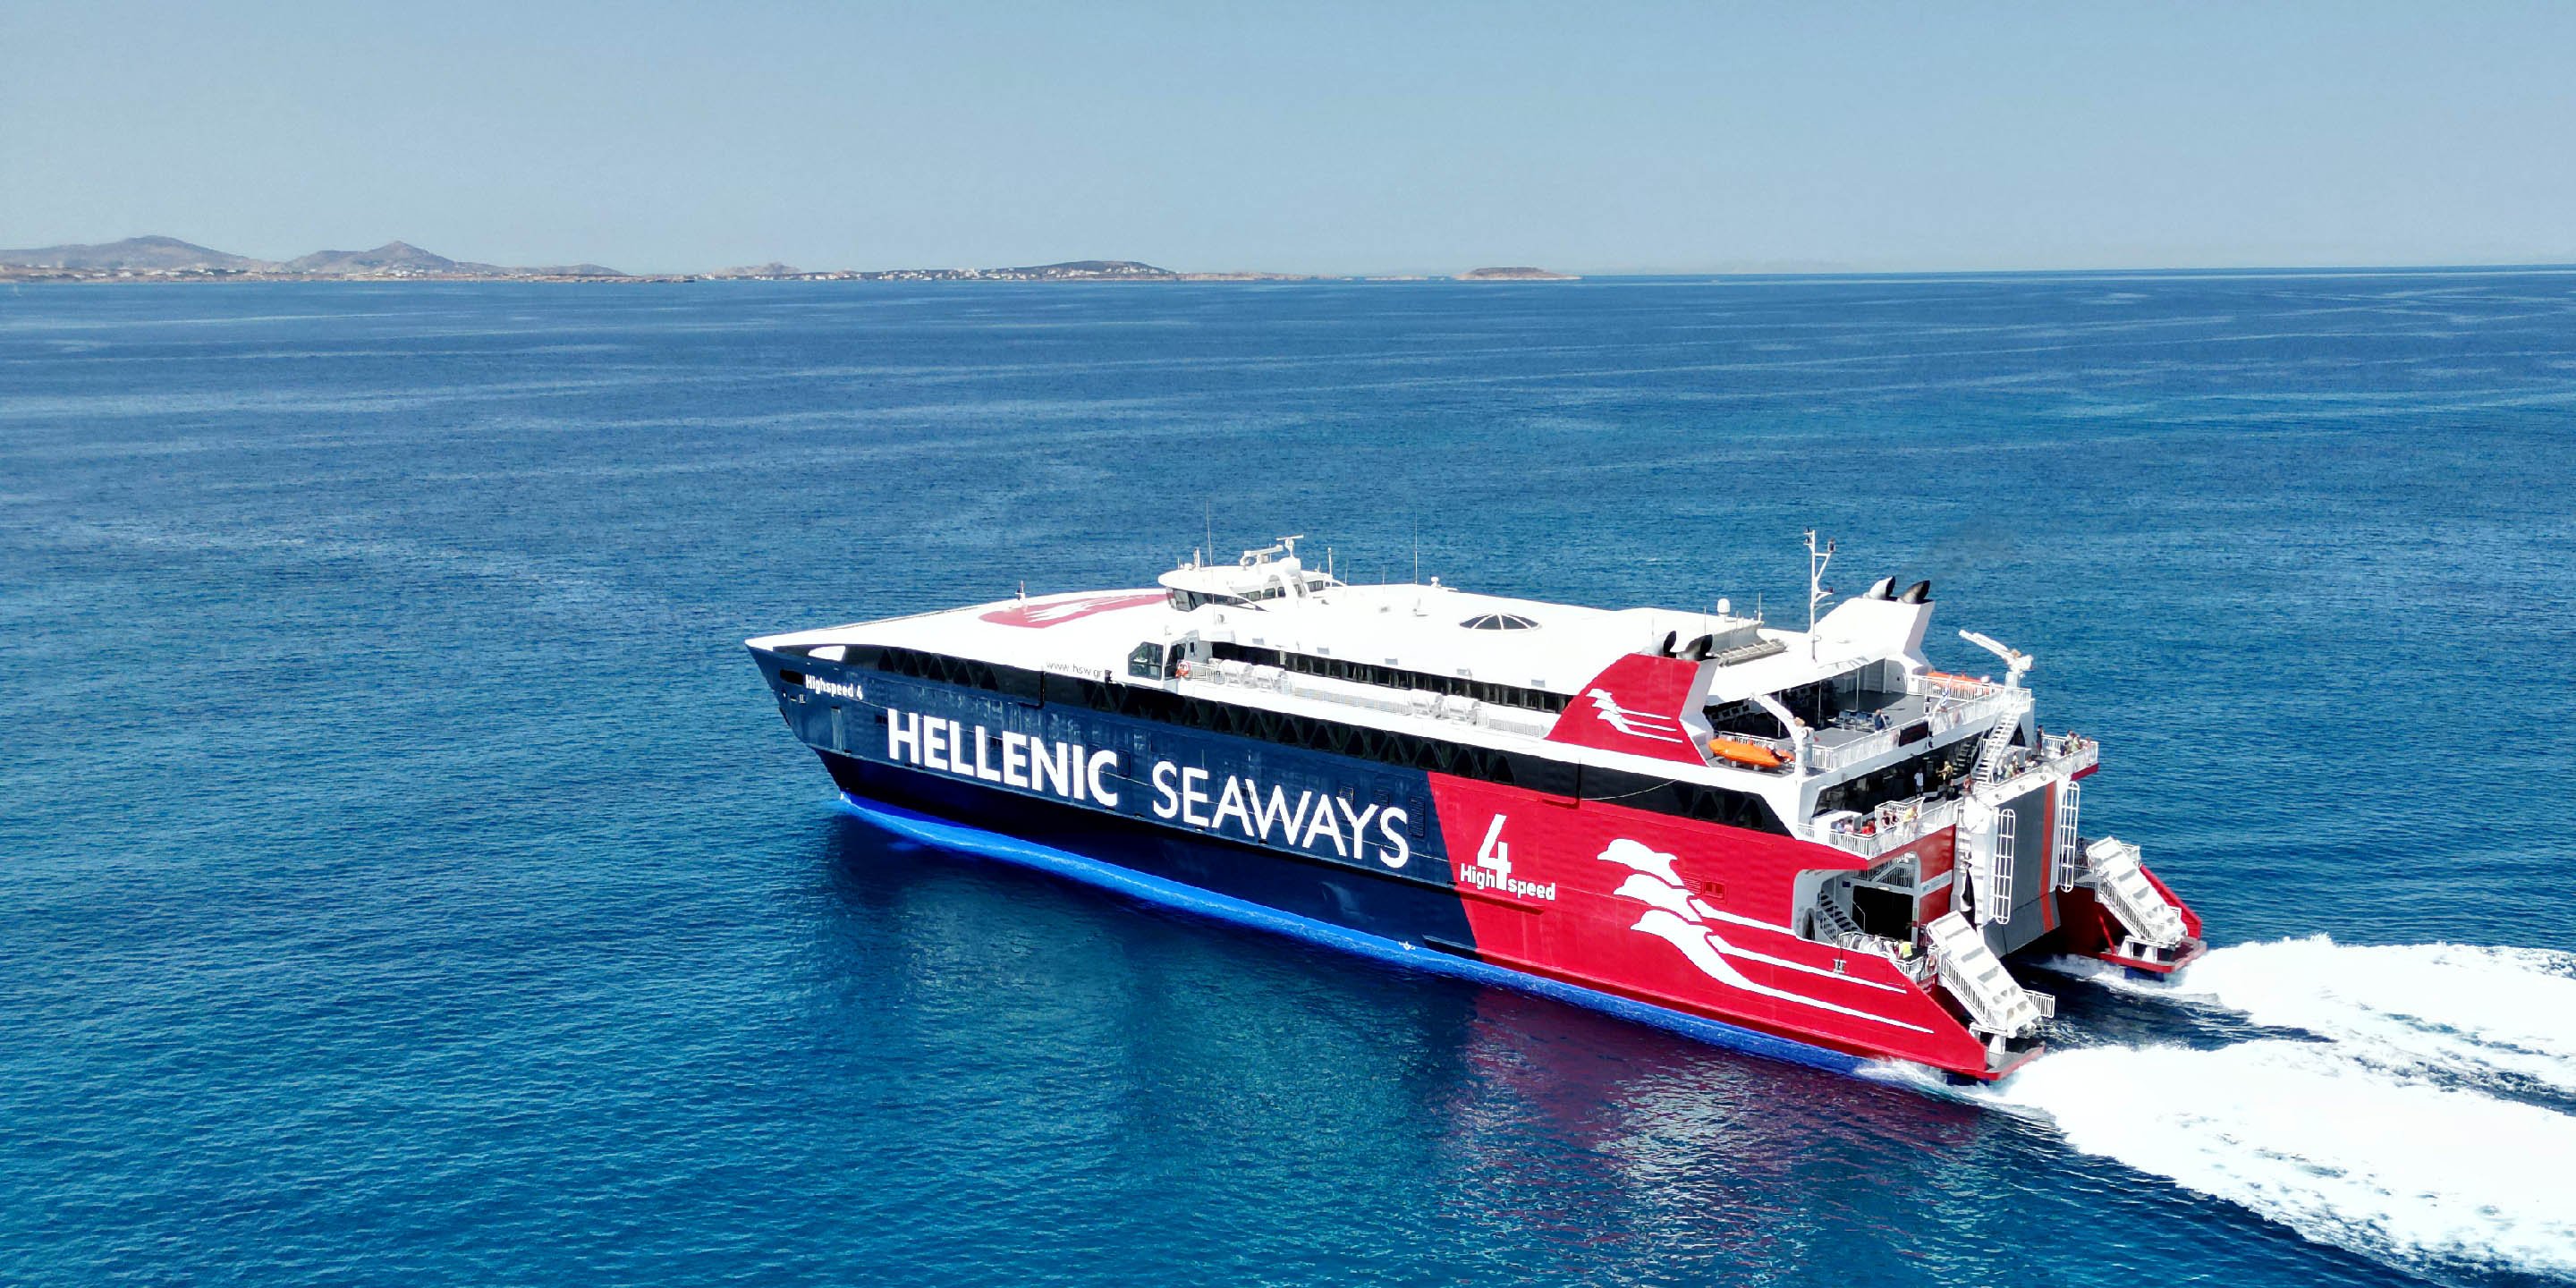 Το ταχύπλοο Highspeed 4 της Hellenic seaways αναχωρεί από το λιμάνι της Νάξου για την Πάρο